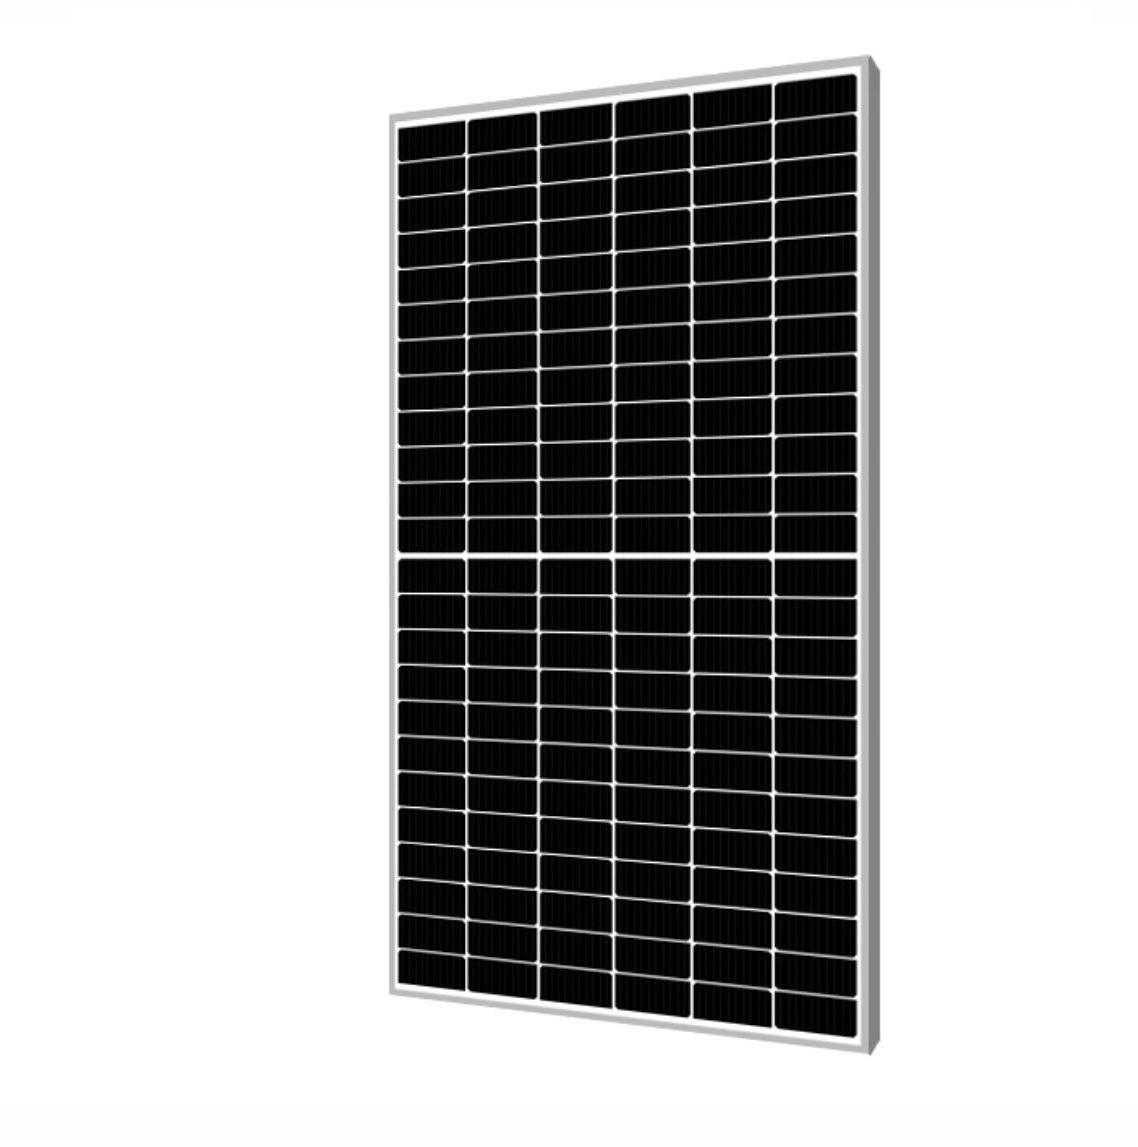 لوحة شمسية عالية الكفاءة من نوع Shm550~600W بـ 144 خلية وحجم 182 مم ونصف الخلية وتقنية 10bb Mono بقوة 550 واط و 560 واط و 570 واط و 580 واط و 590 واط و 600 واط.